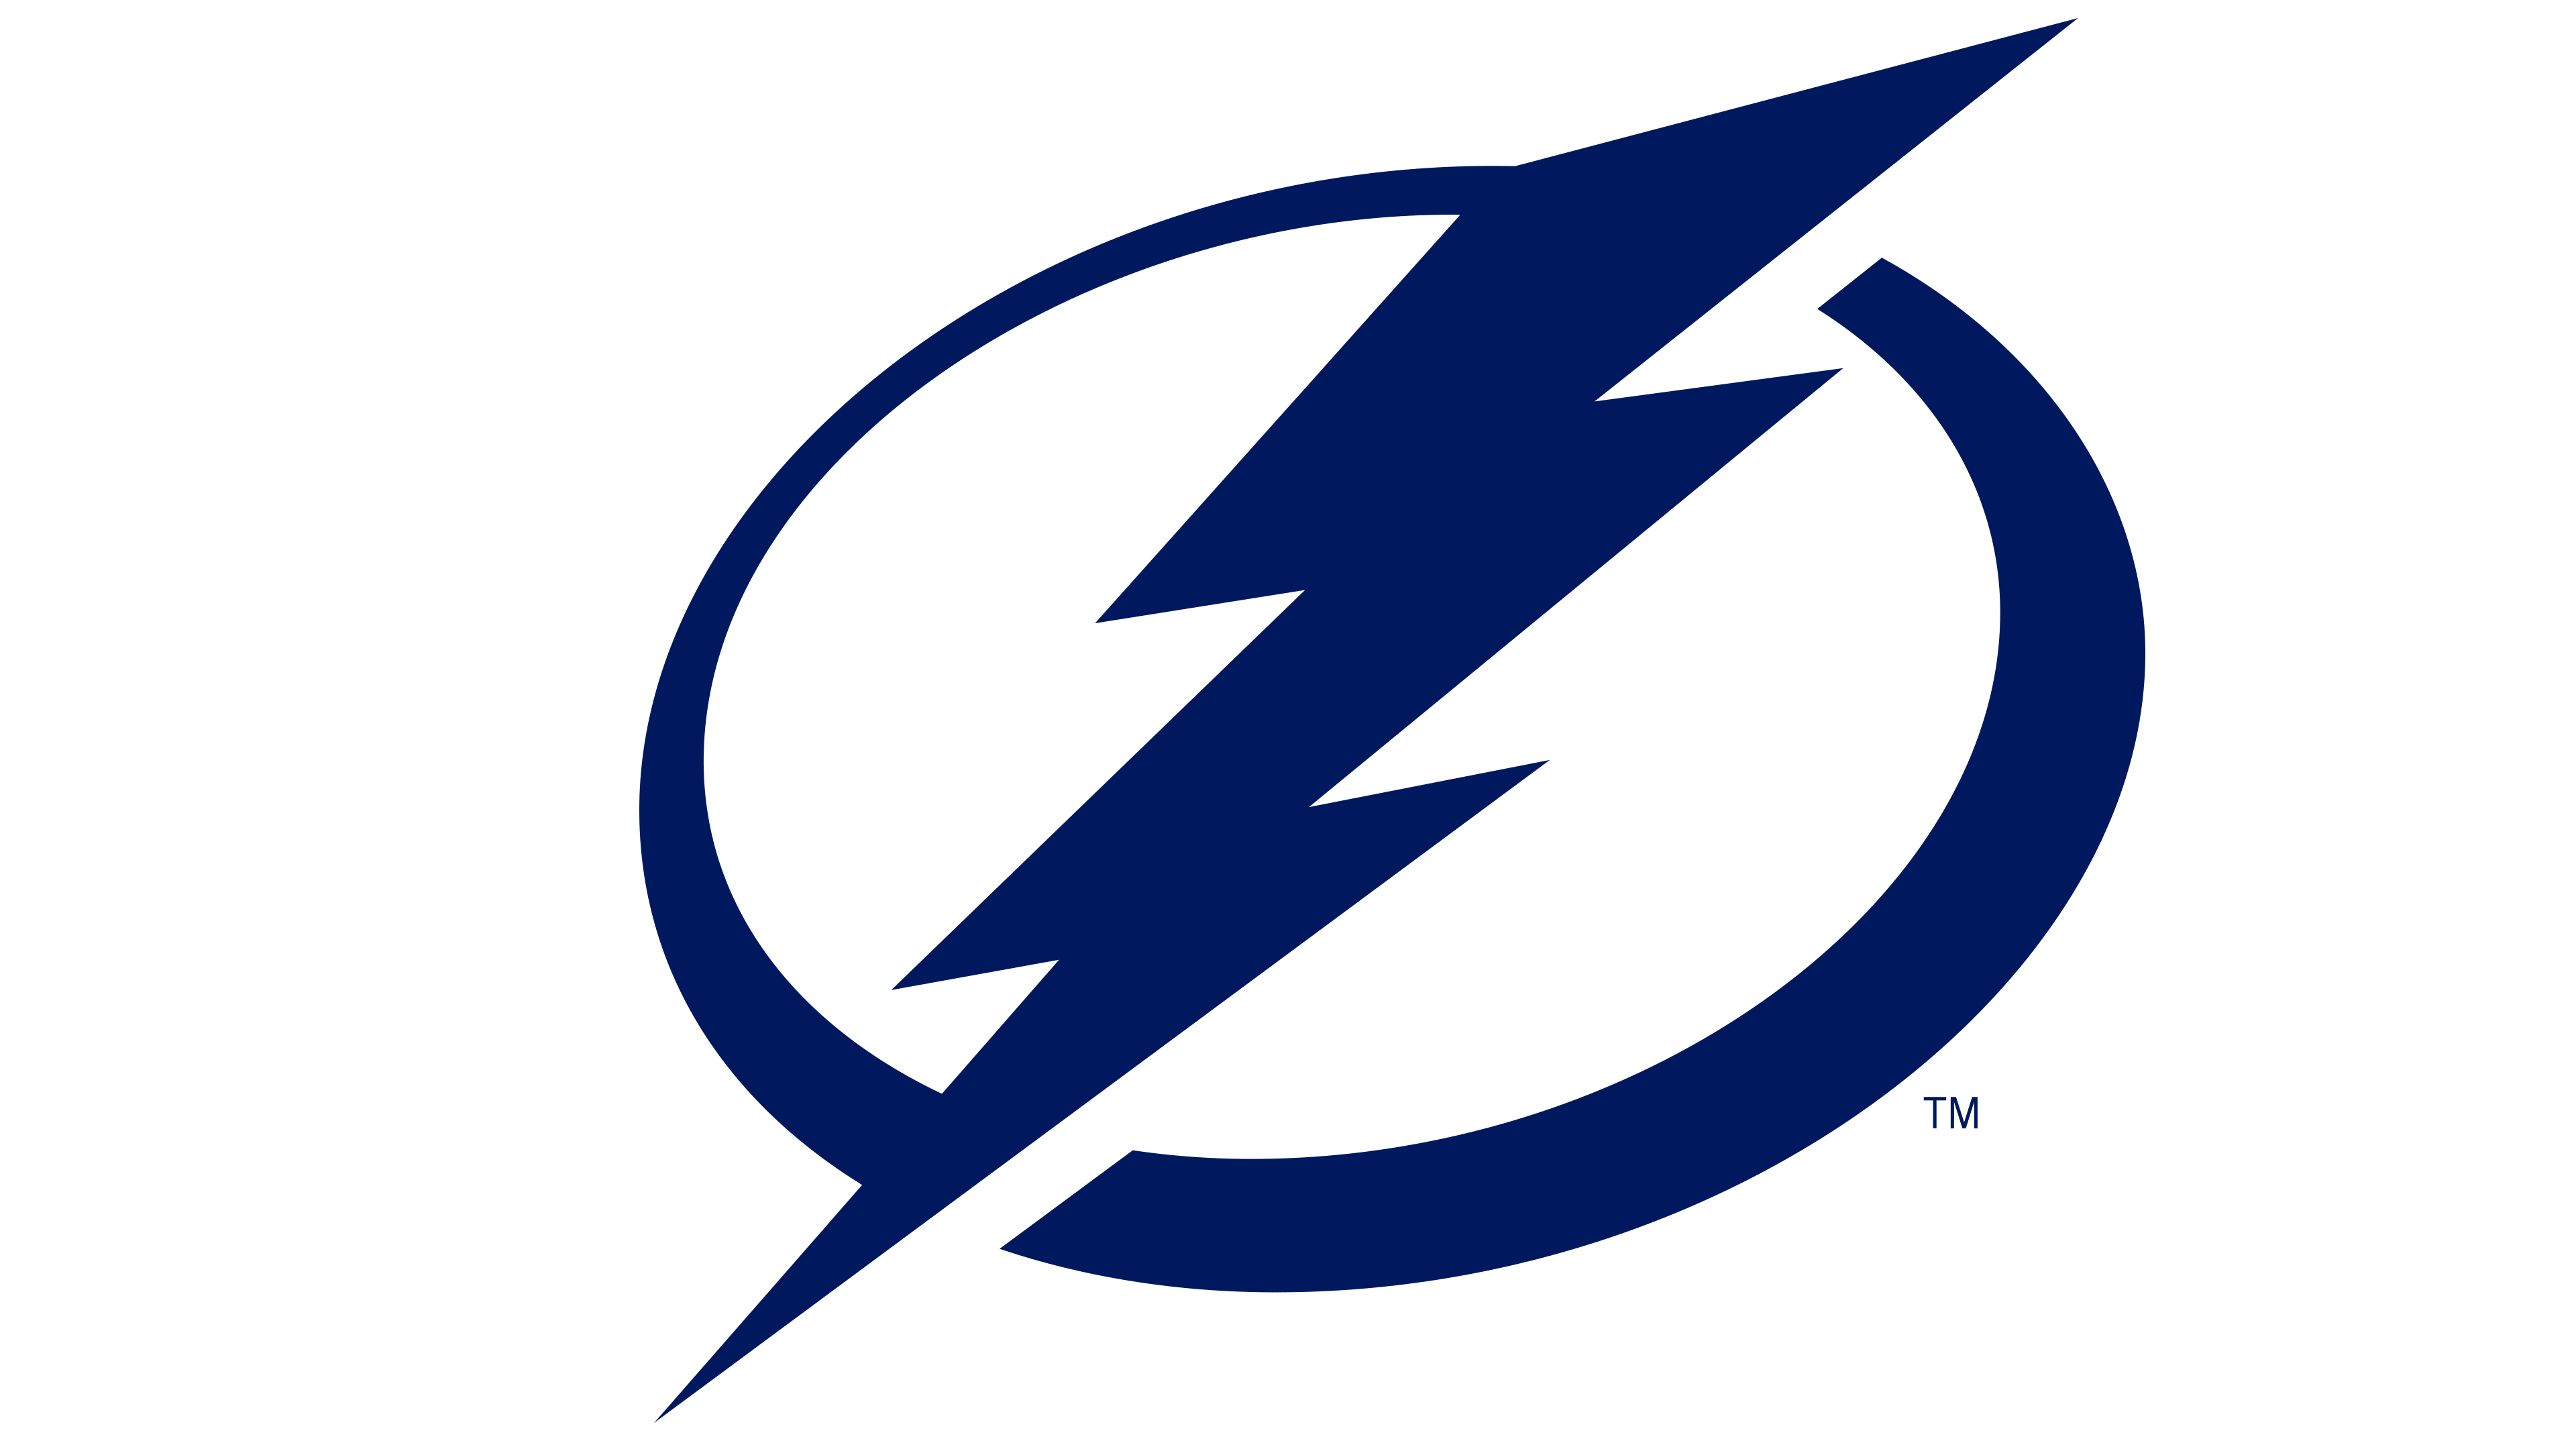 Tampa Bay Lightning Logo | Significado, História e PNG